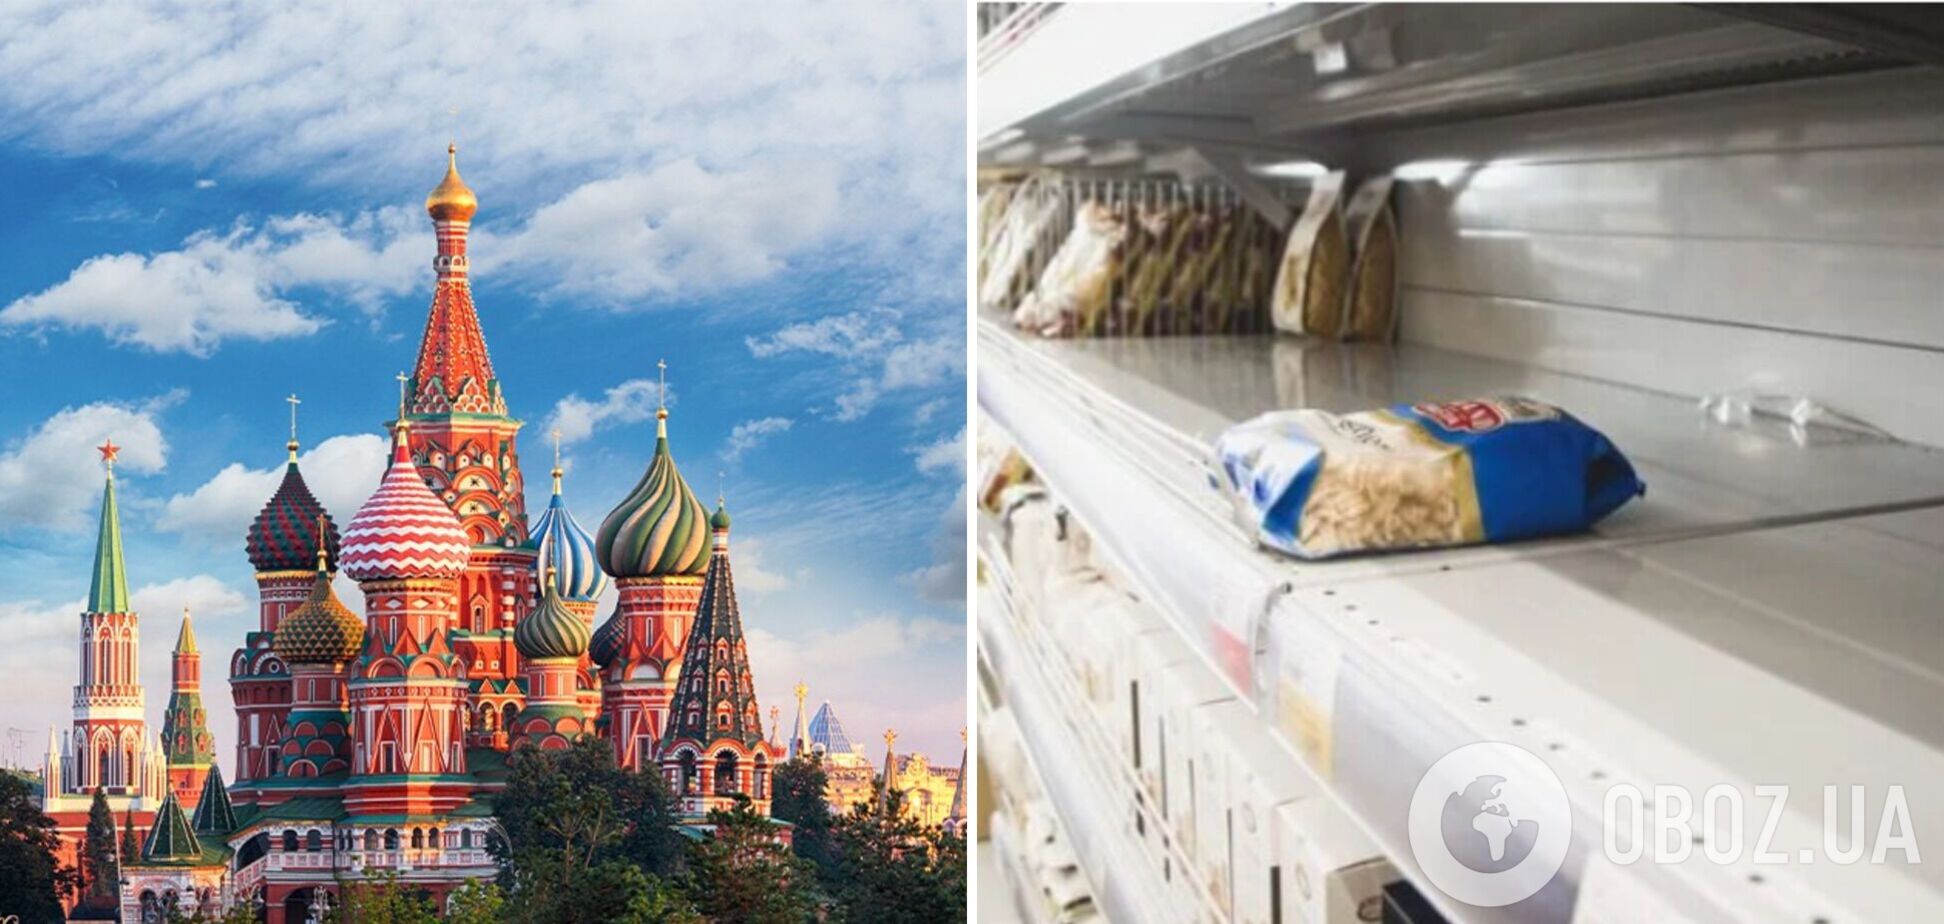 Не хлібом єдиним: в РФ якісні продукти харчування стають привілеєм багатіїв